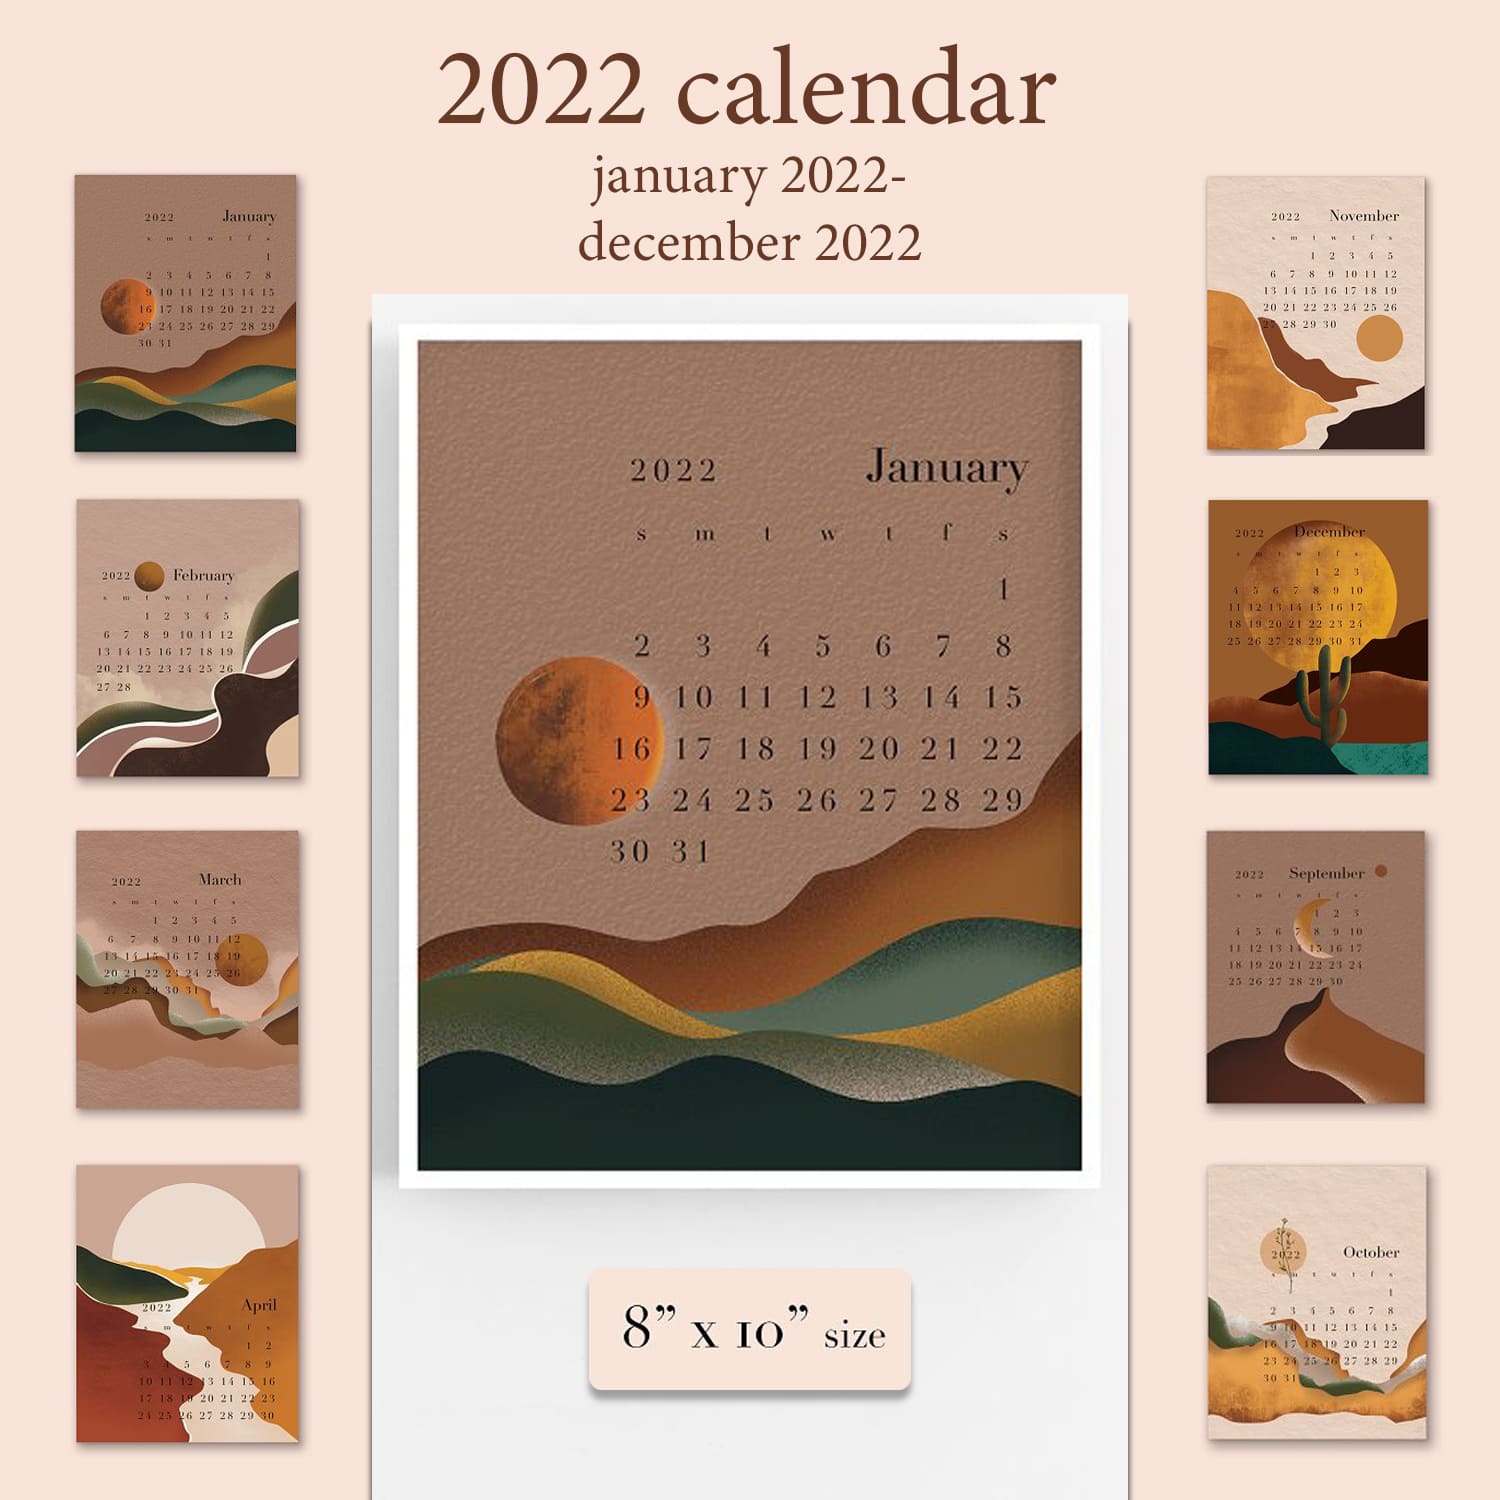 Abstract Calendar 2022 cover.